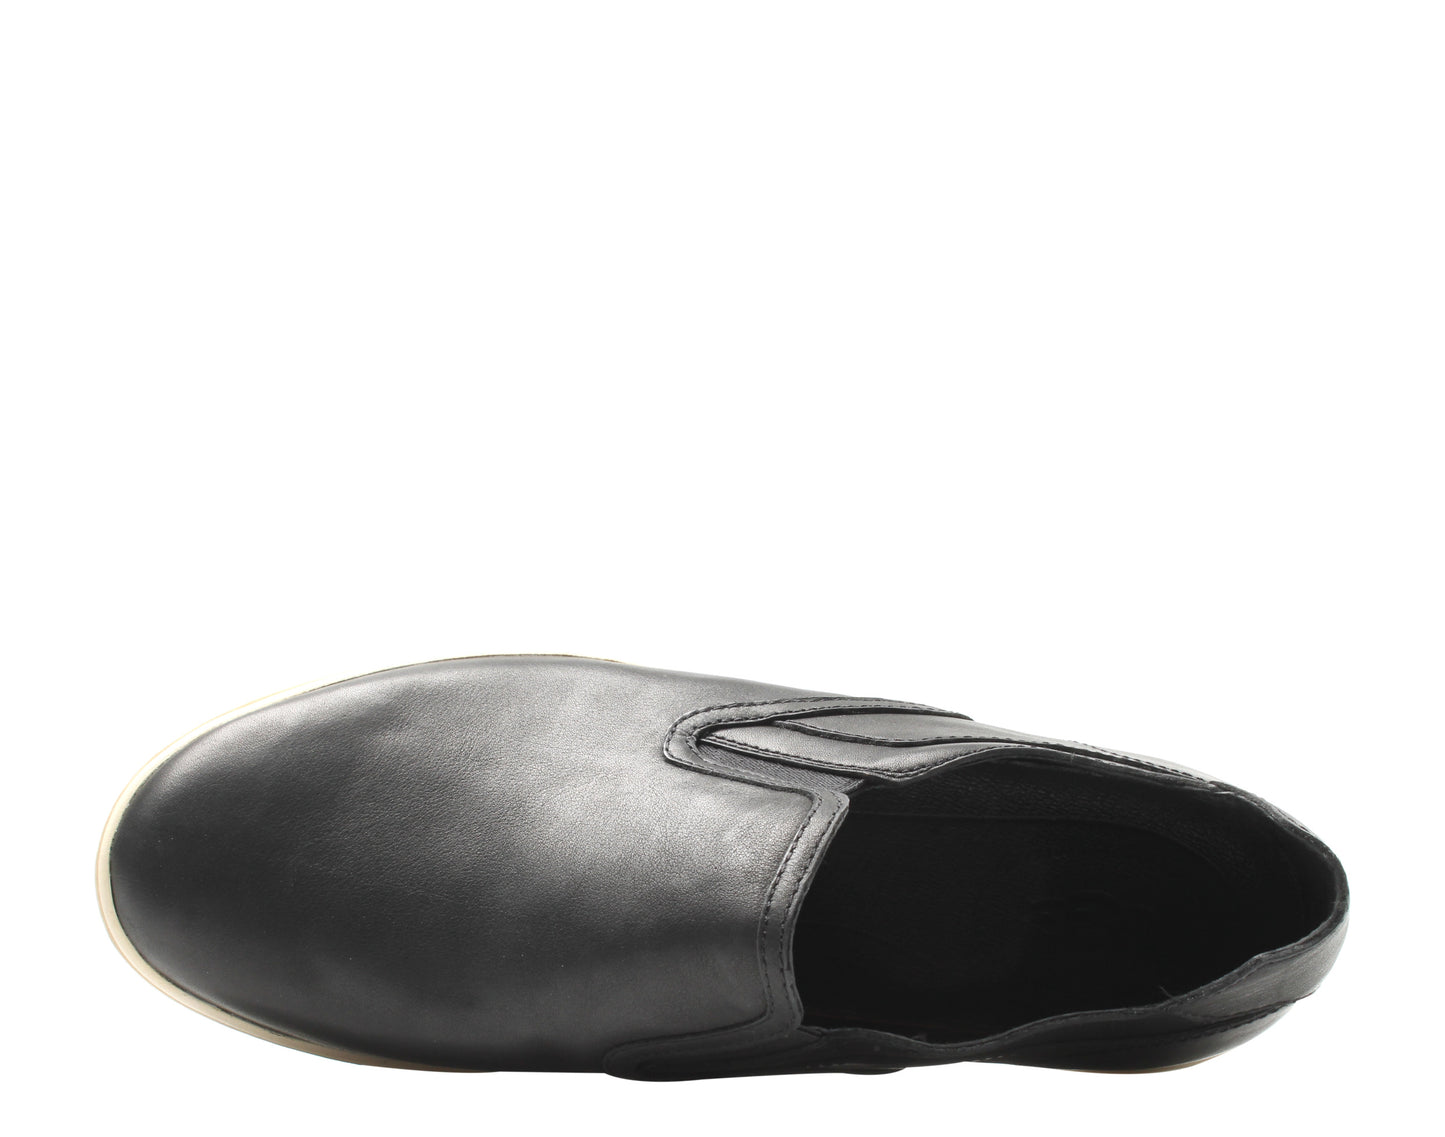 UGG Australia Tobin Slip-On Men's Casual Shoes